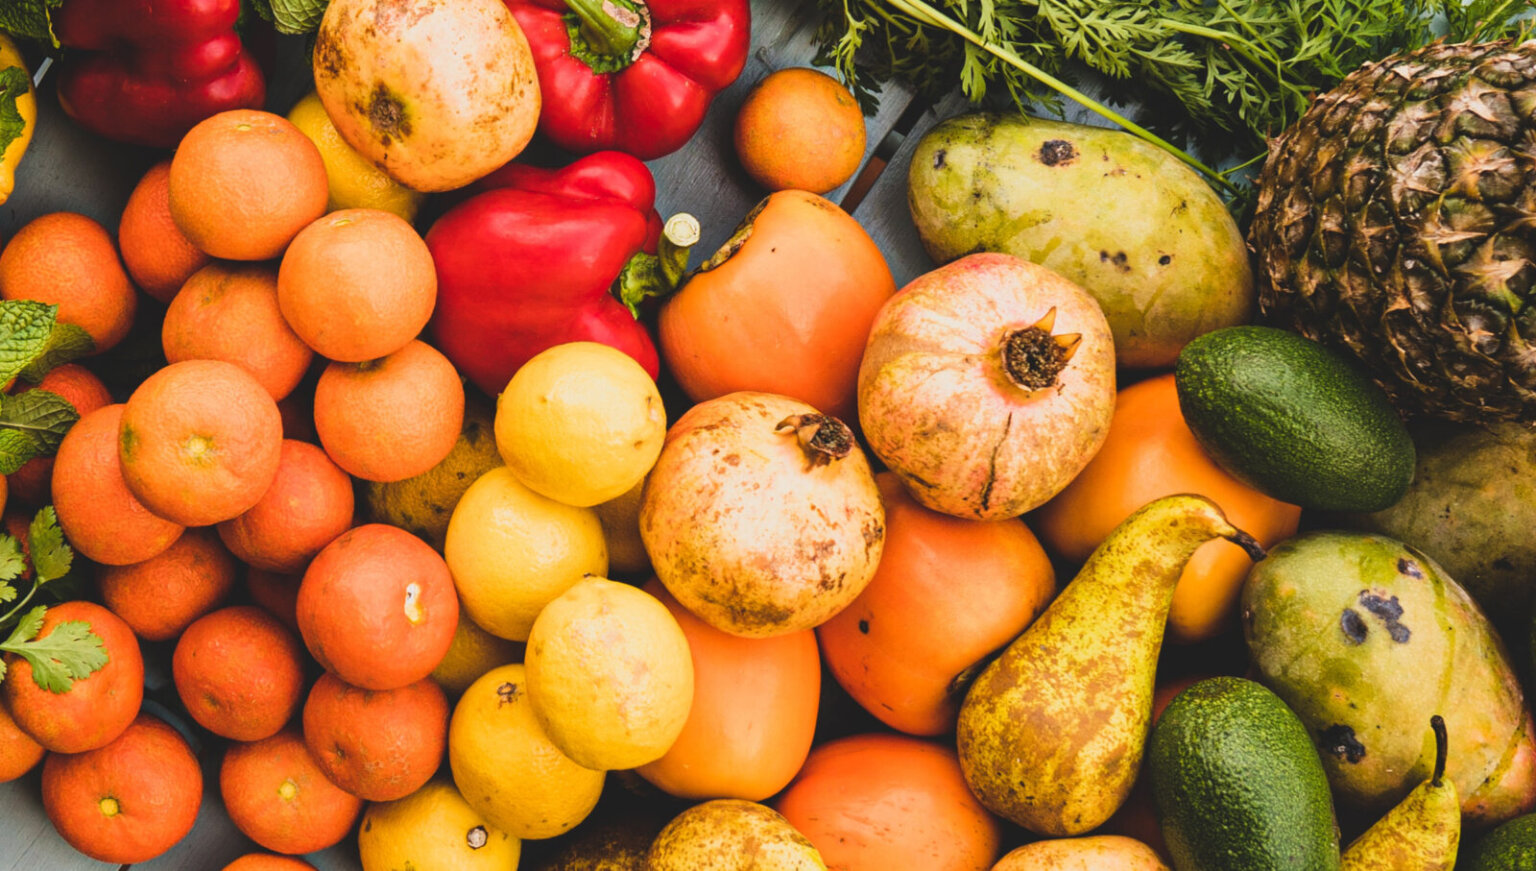 Gesundheit: Leckeres Obst und Gemüse zum snacken!